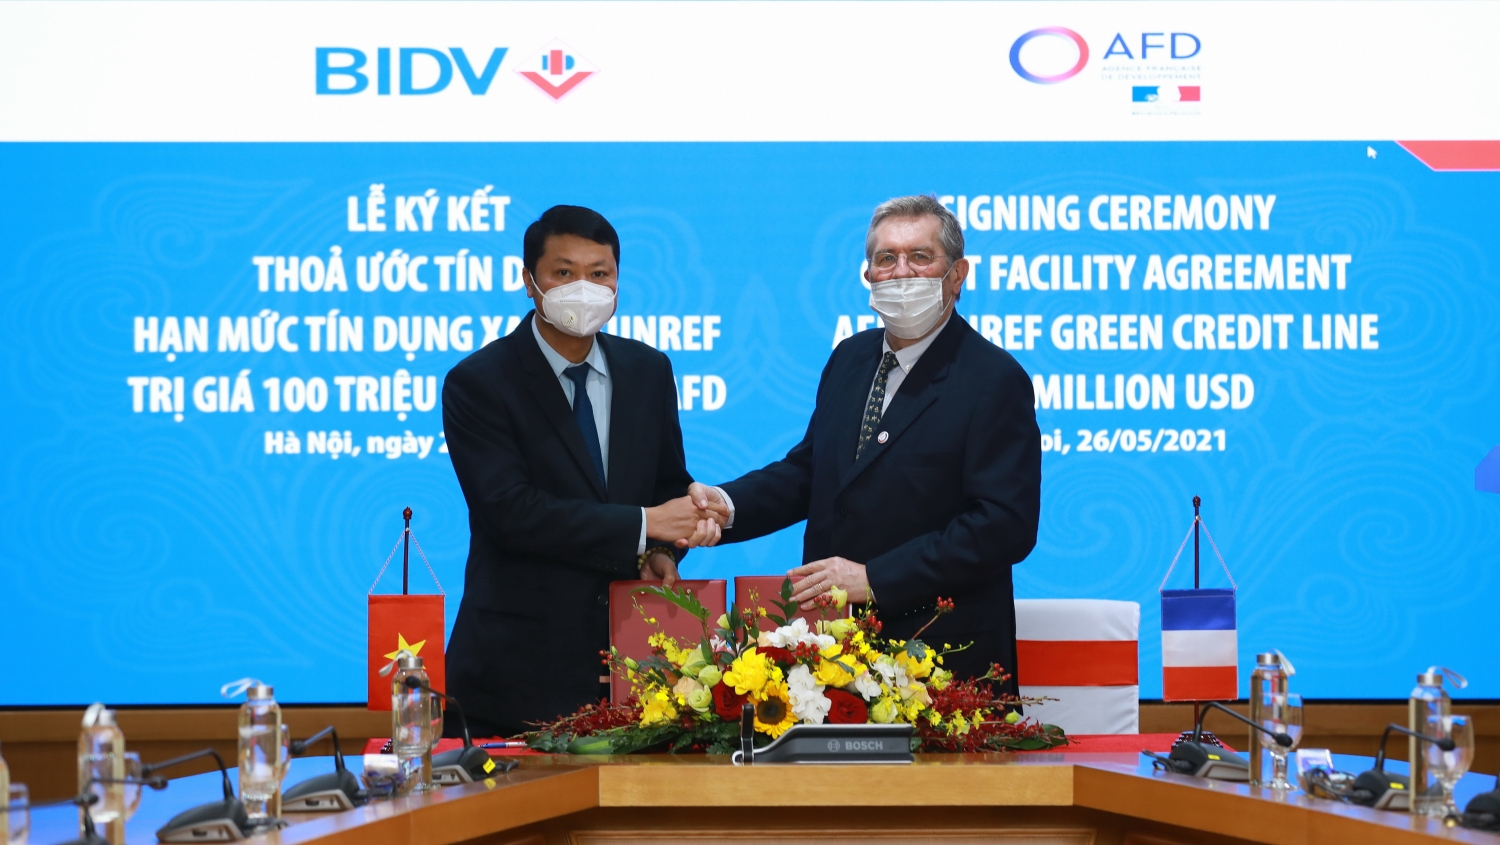 AFD cung cấp hạn mức 100 triệu USD cho BIDV để tài trợ các doanh nghiệp trong lĩnh vực năng lượng